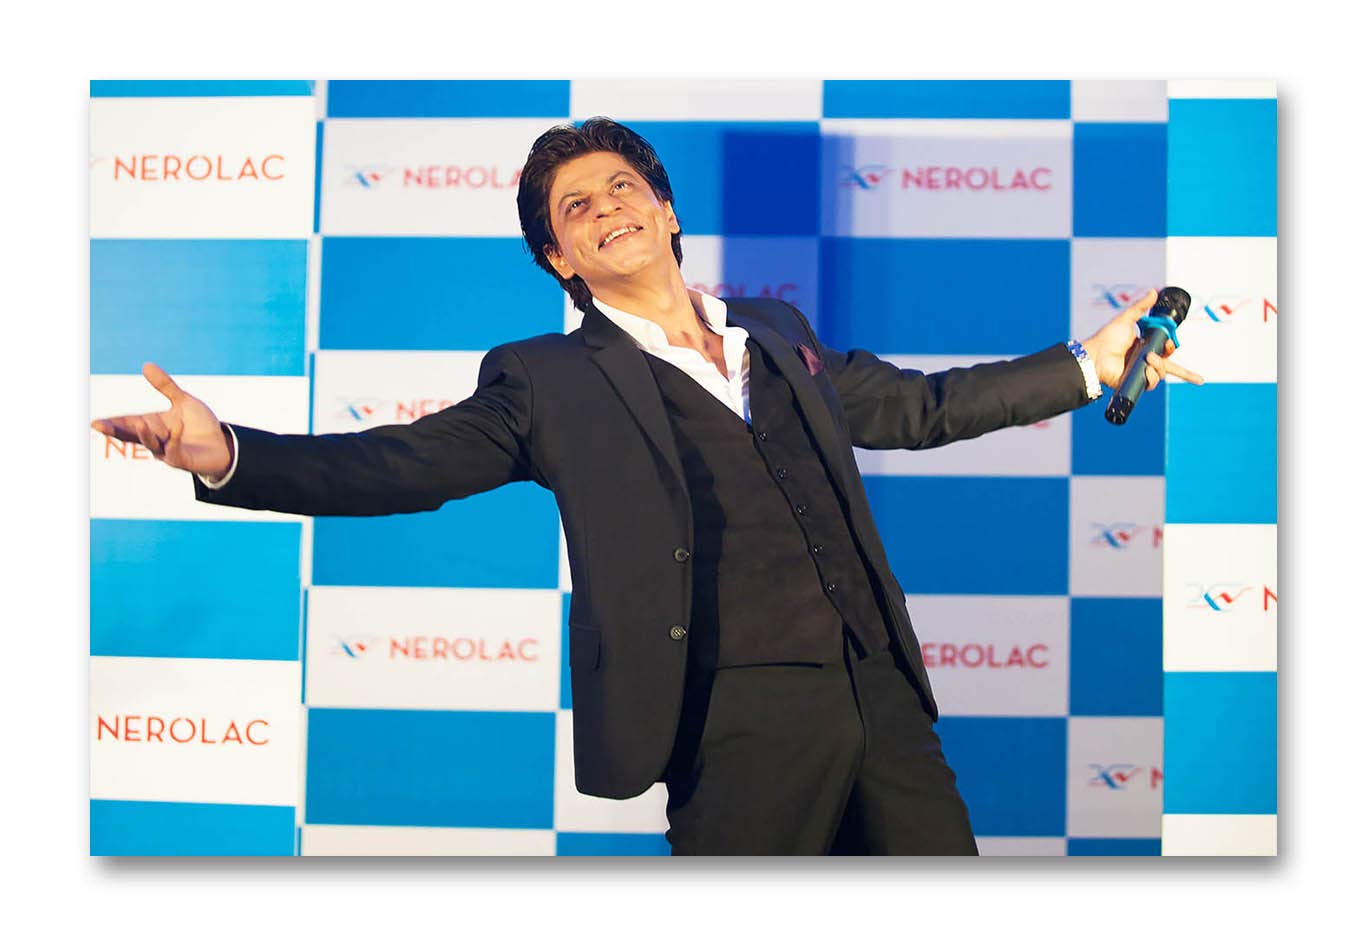 Shah Rukh Khan pose